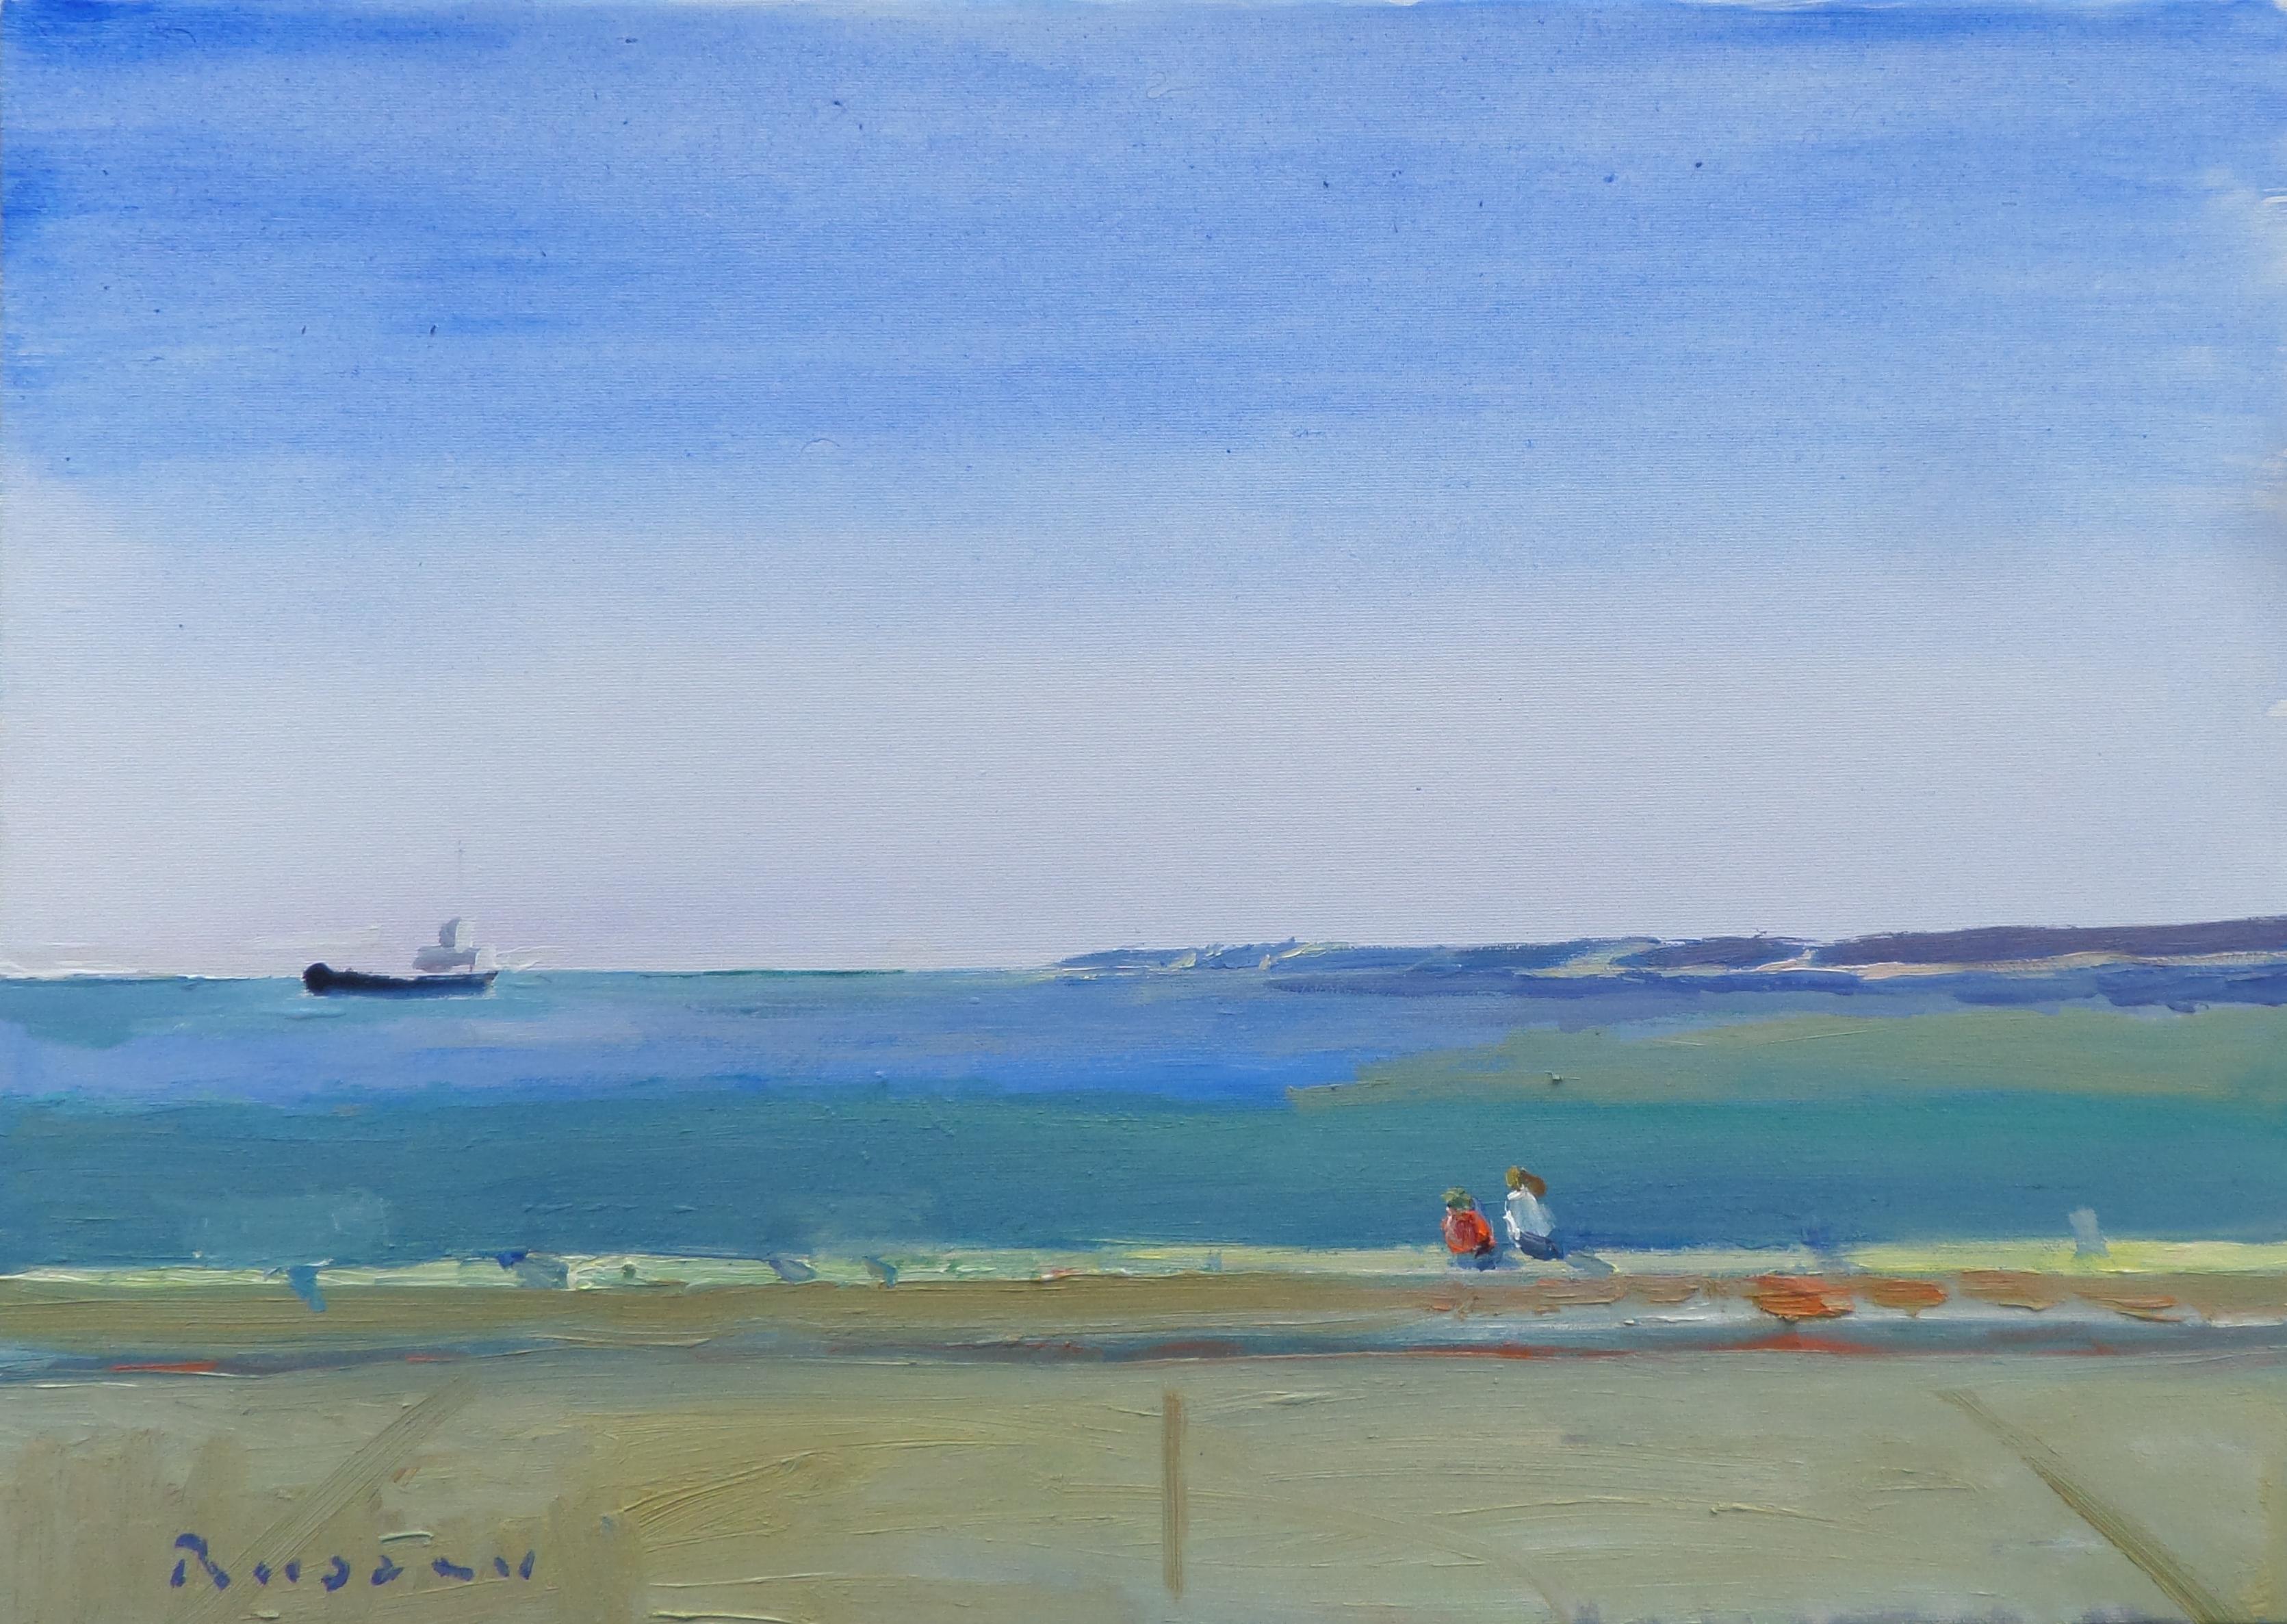 Un matin au bord de la mer - Peinture à l'huile de paysage, couleurs bleu, blanc, gris et jaune 